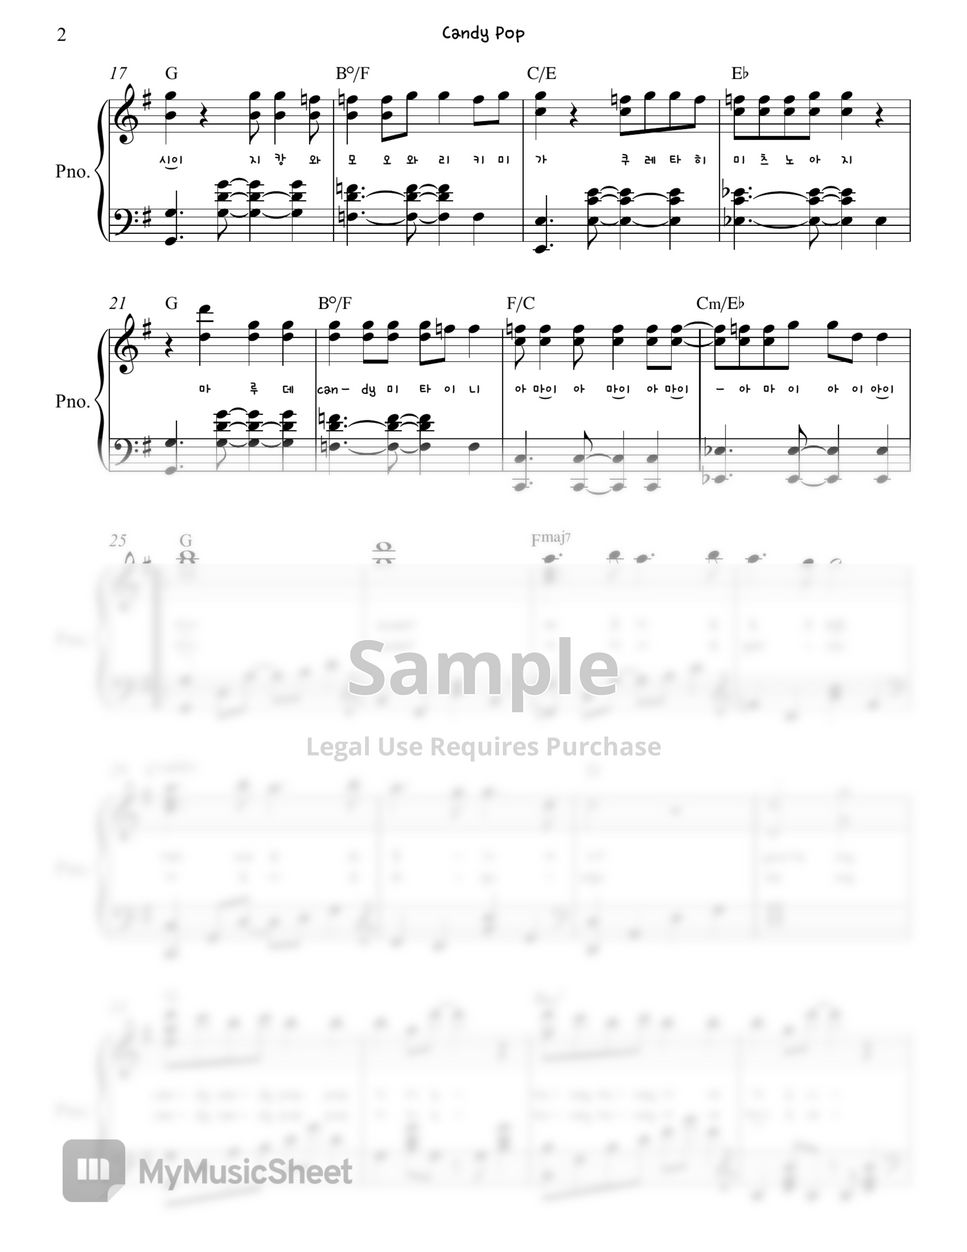 Twice (트와이스) - Candy Pop (캔디팝)  Piano Sheet by. Gloria L.